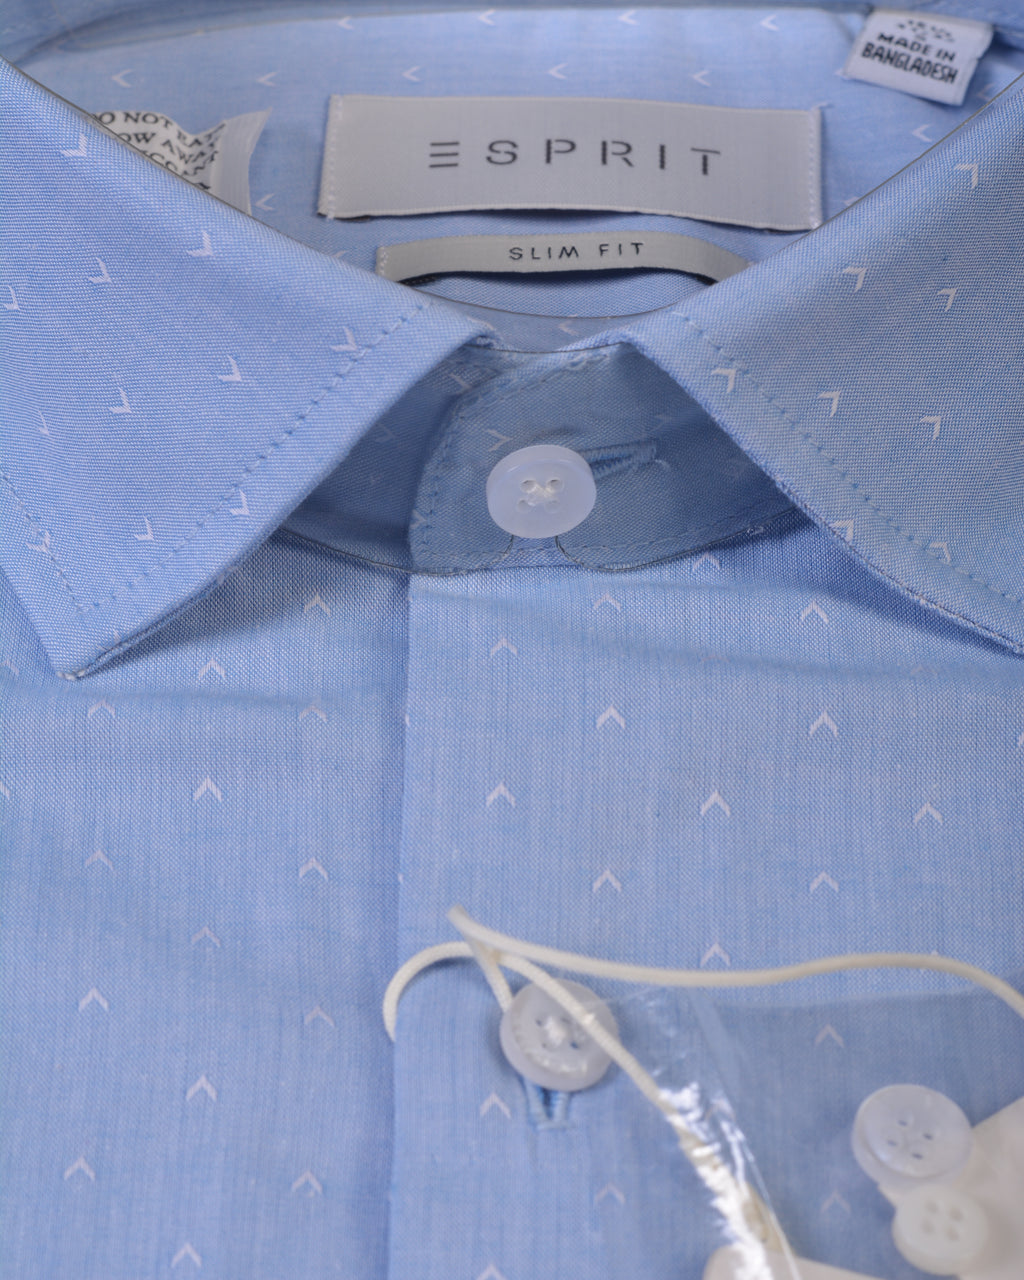 Esprit Slim fit, sustainable cotton shirt Blue Arrow Tacher